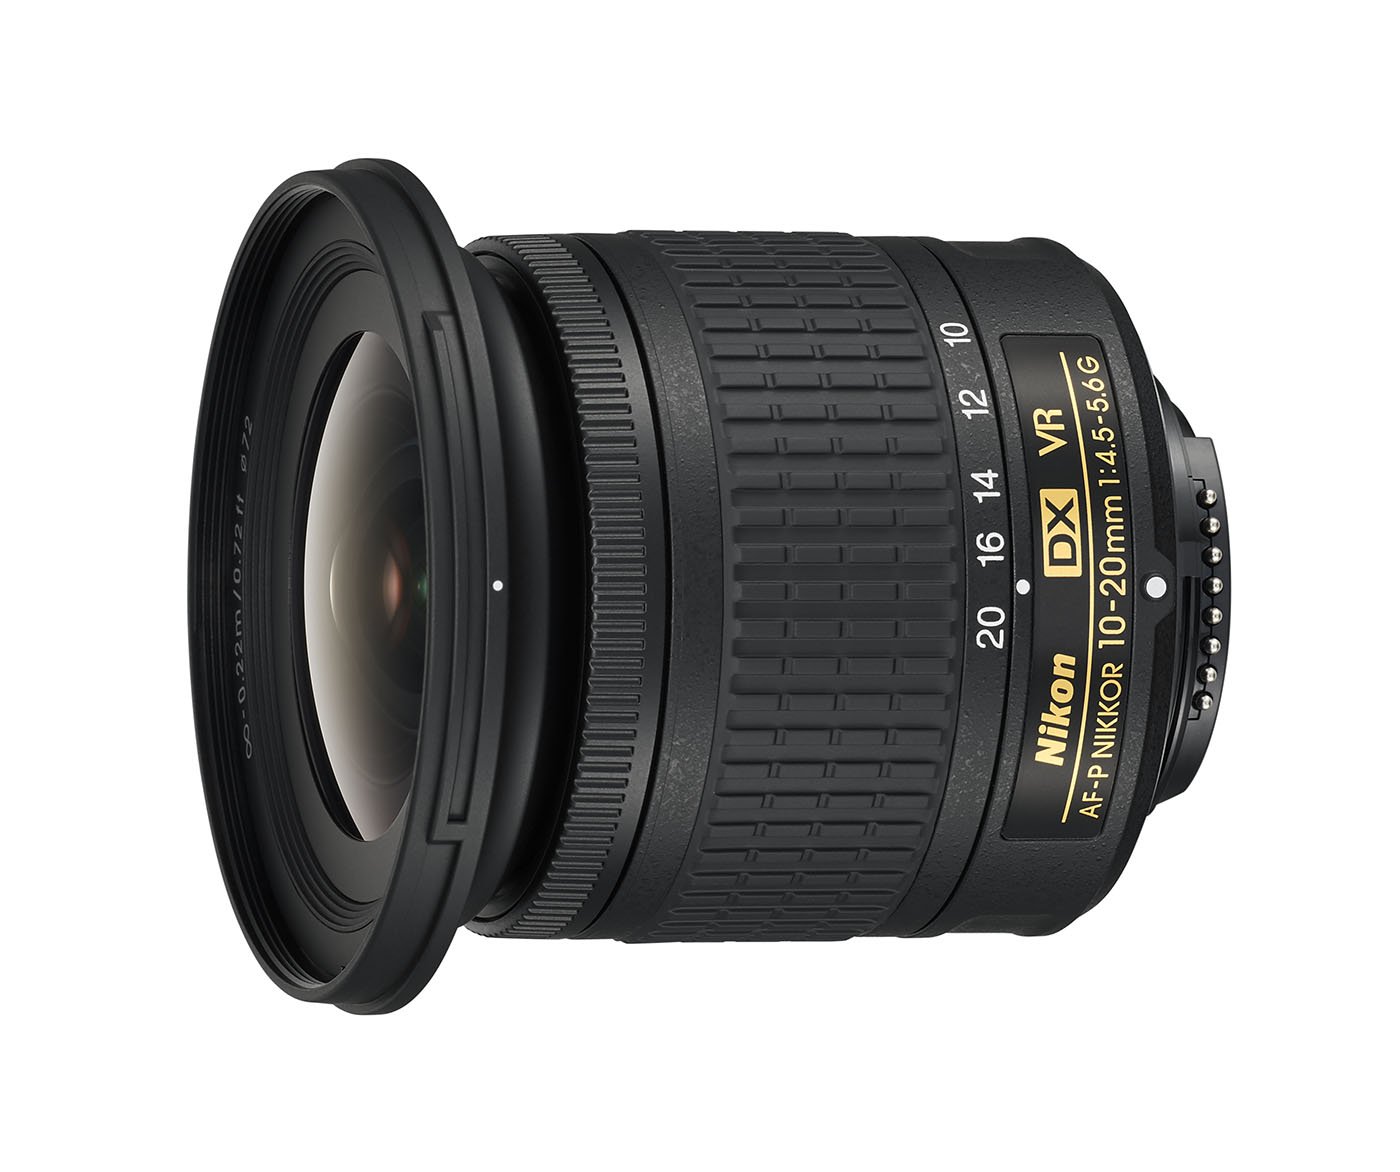 Nikon AF-P DX NIKKOR Zoomobjektiv, 10-20mm f/4,5-5,6G VR, schwarz [Nital Card: 4 Jahre Garantie]